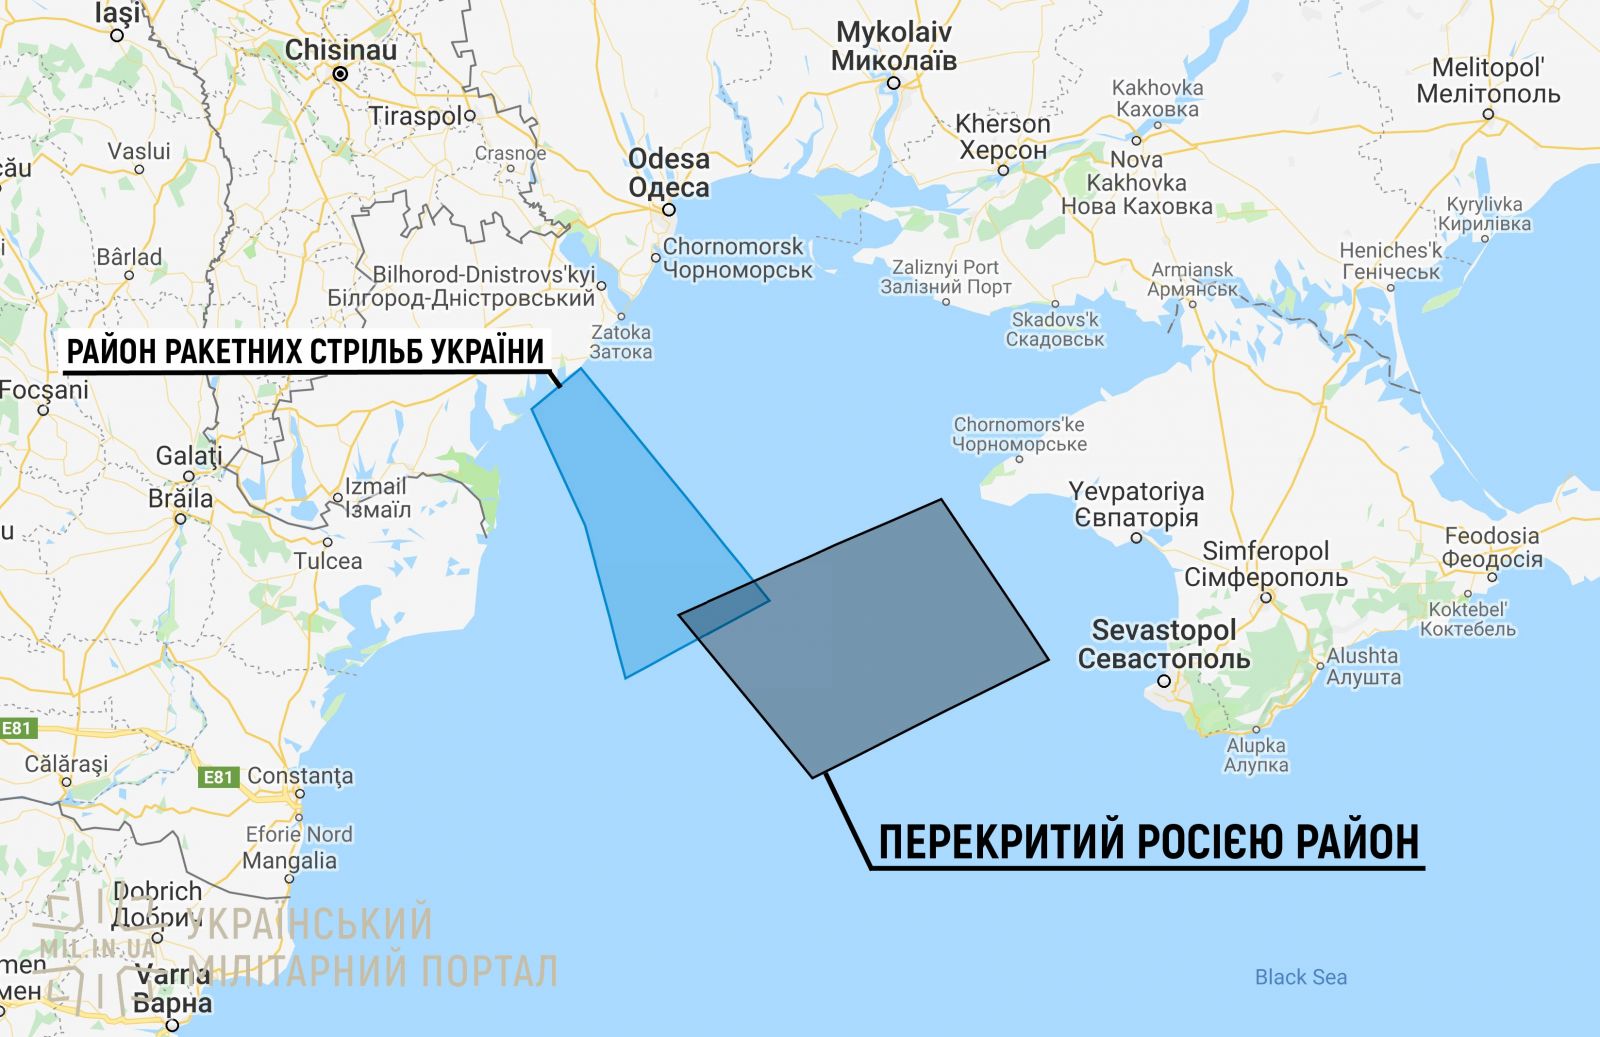 РФ готовит провокацию. Карта: «Украинский милитарный портал»